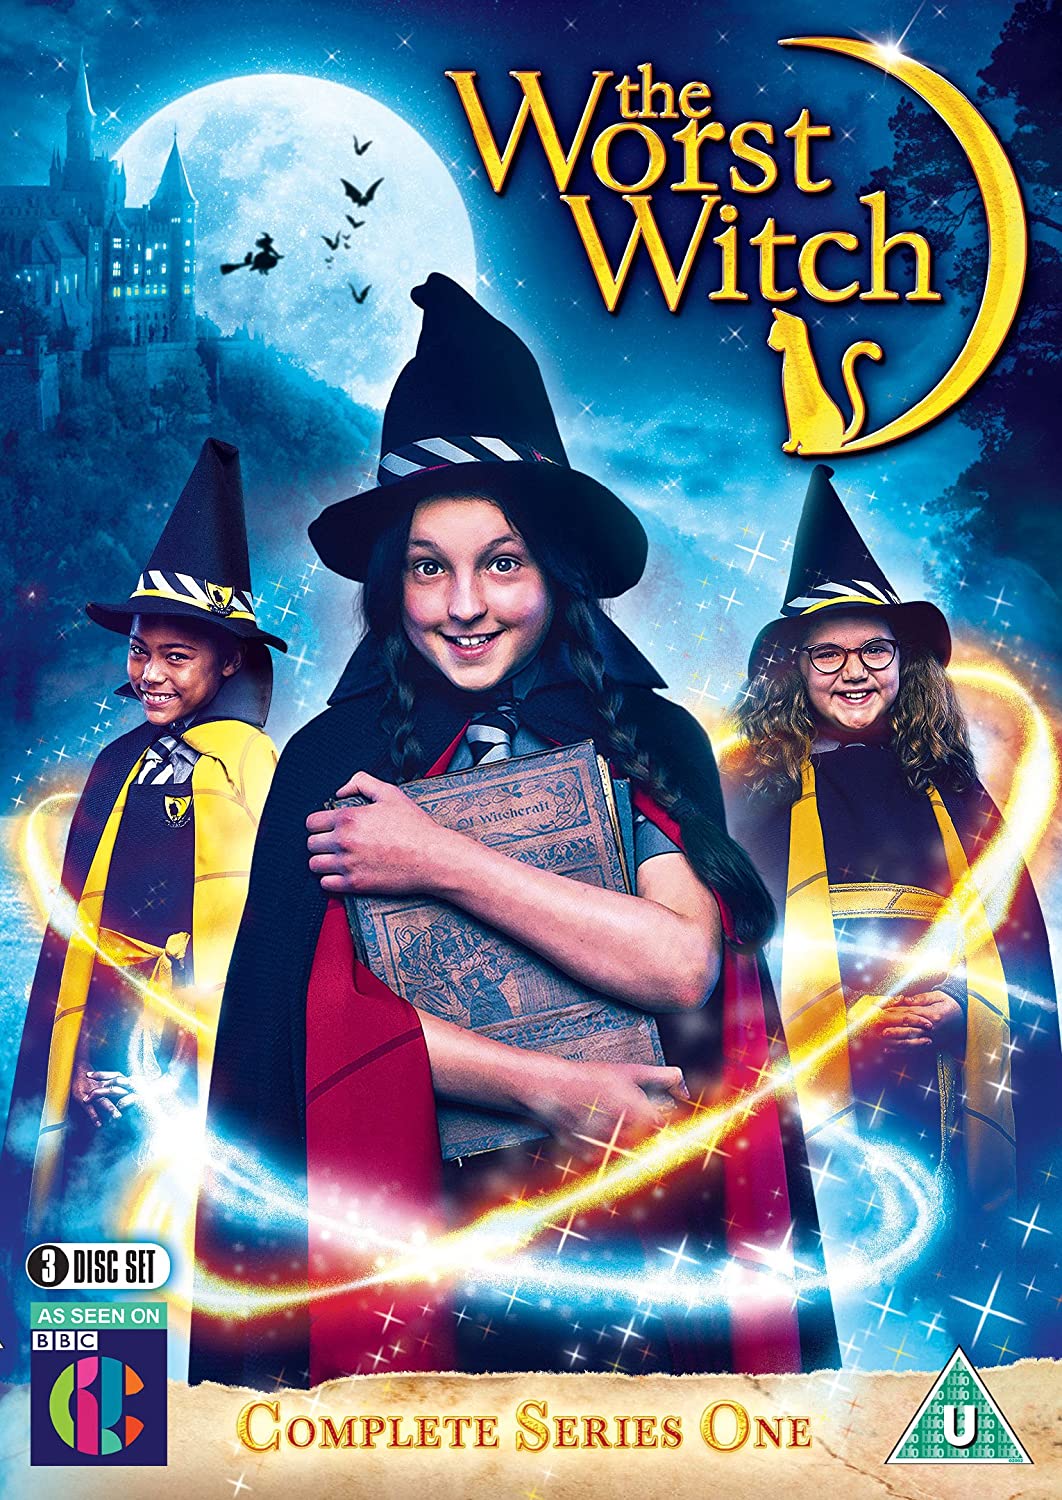 ดูหนังออนไลน์ฟรี The Worst Witch Season 3 (2019) โอมเพี้ยง! แม่มดน้อยสู้ตาย ซีซั่น 3 ตอนที่ 11